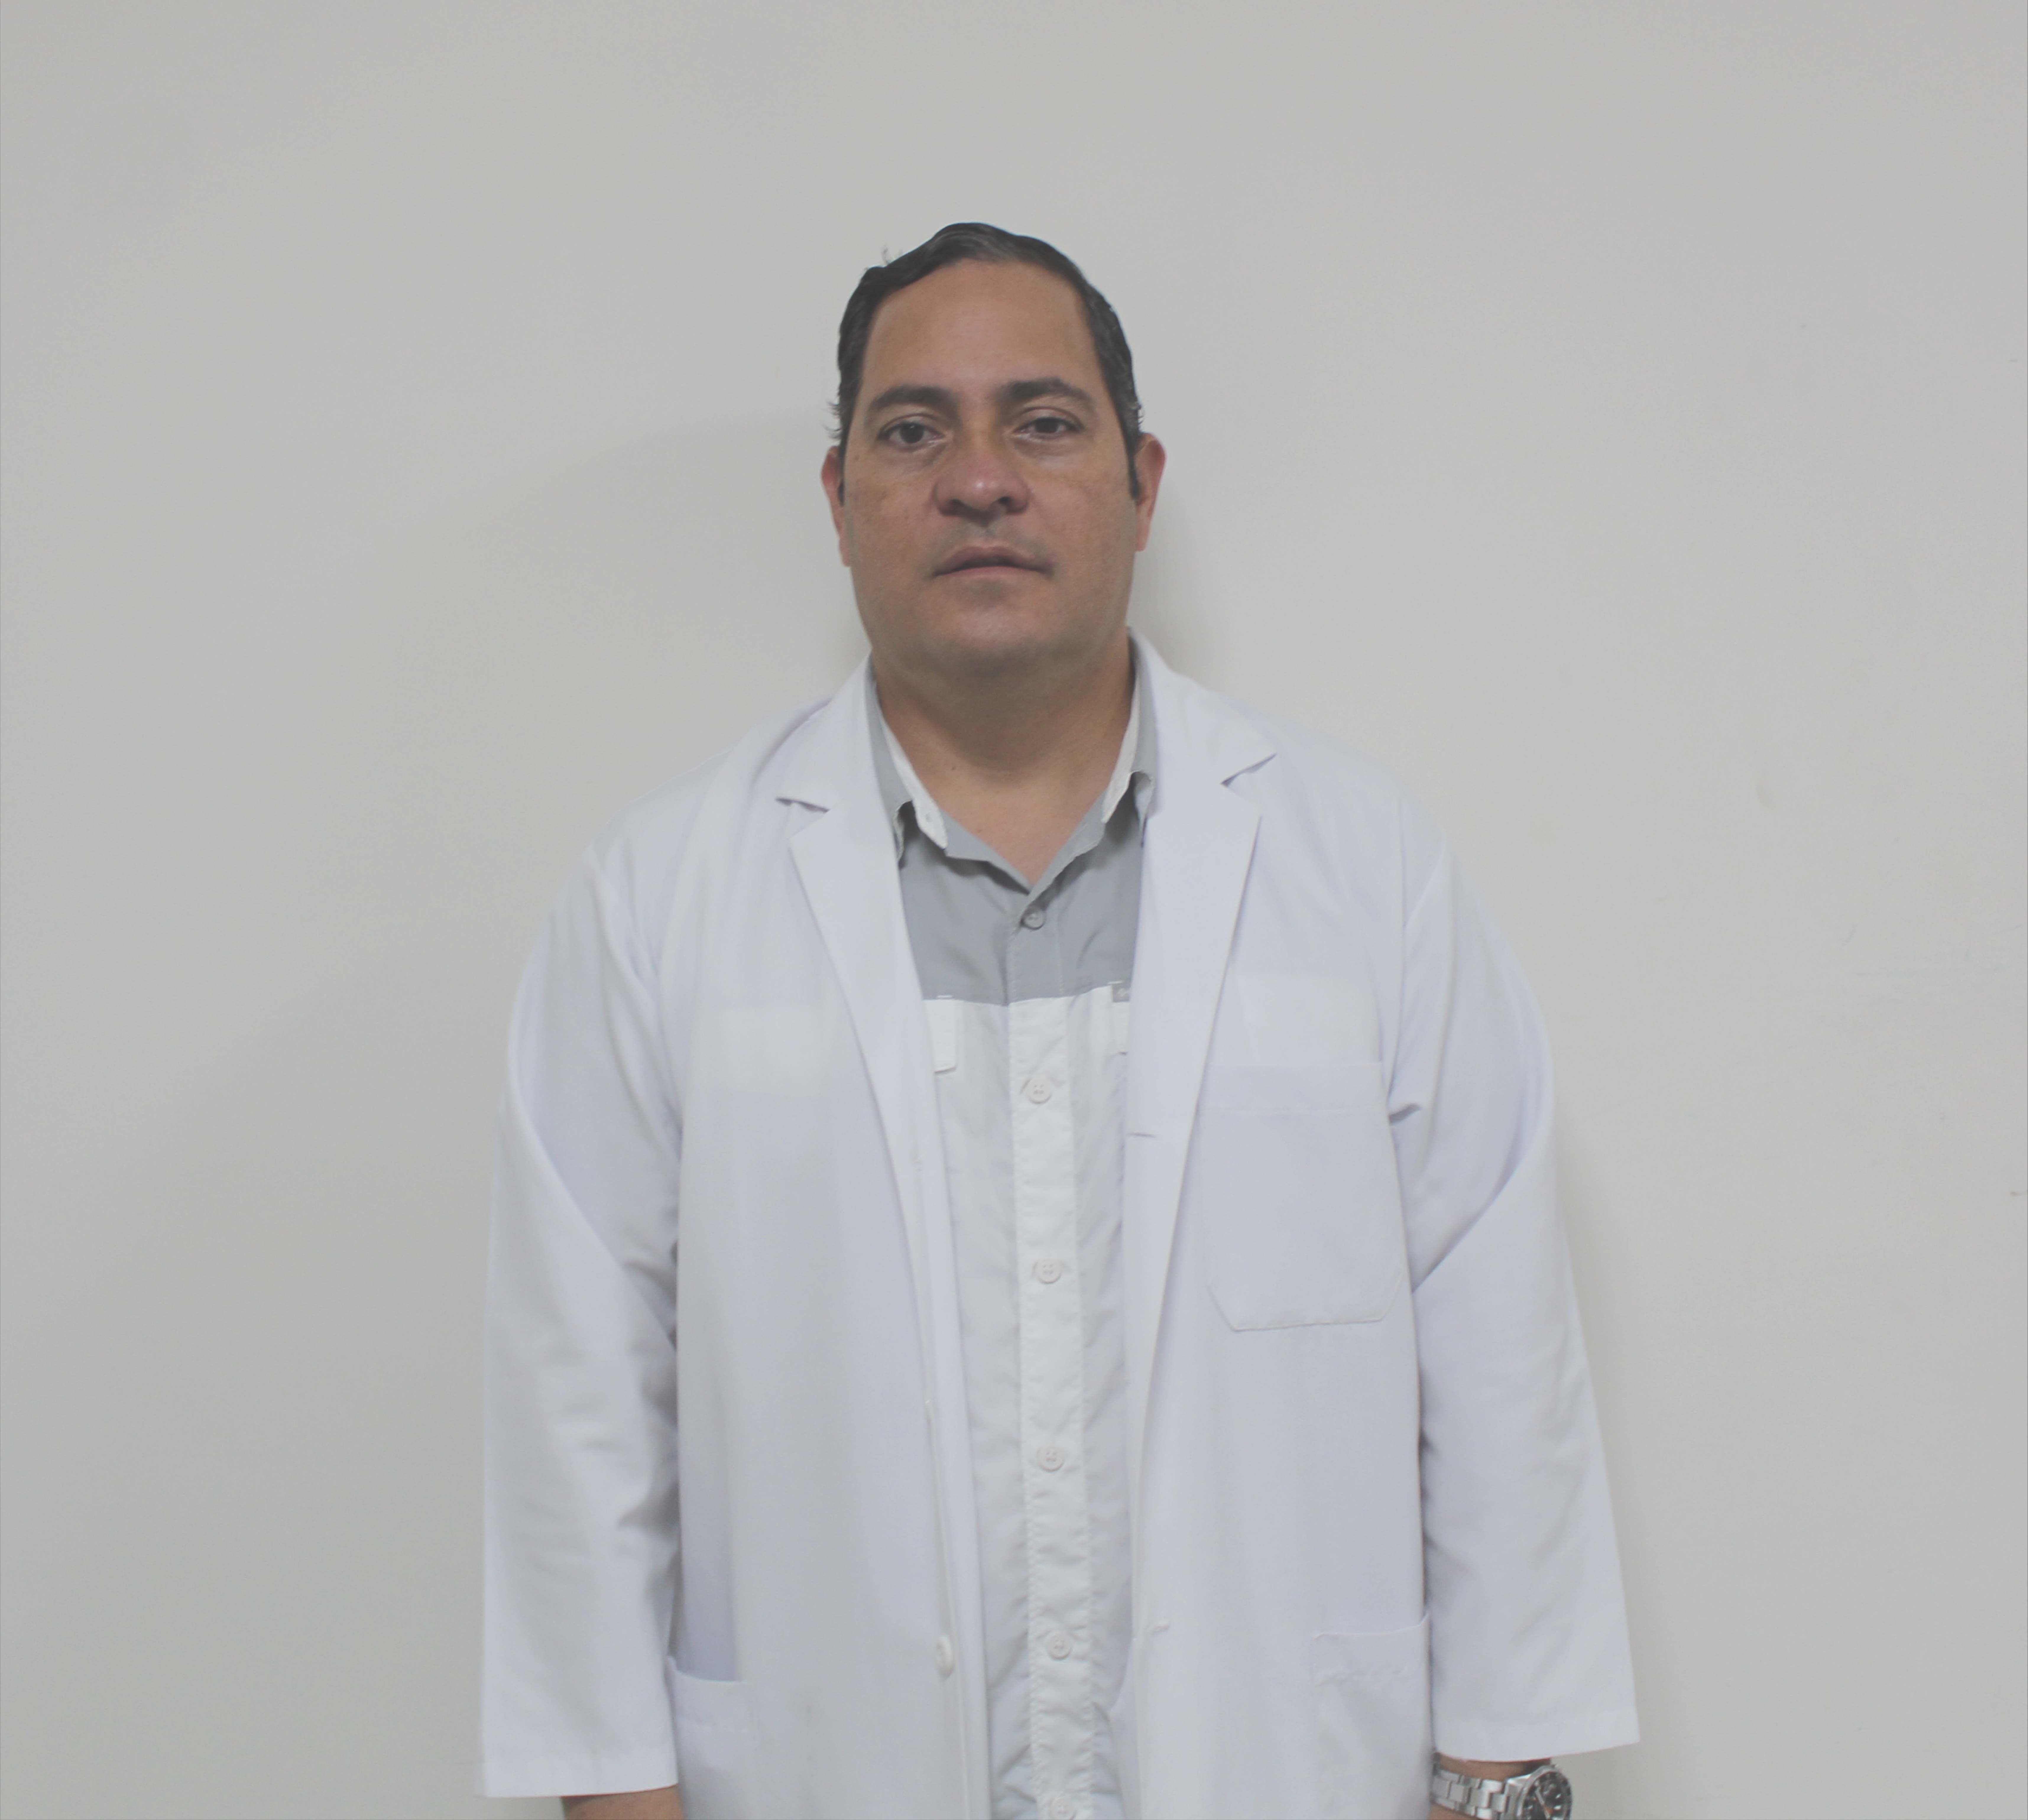 Dr. Carlos